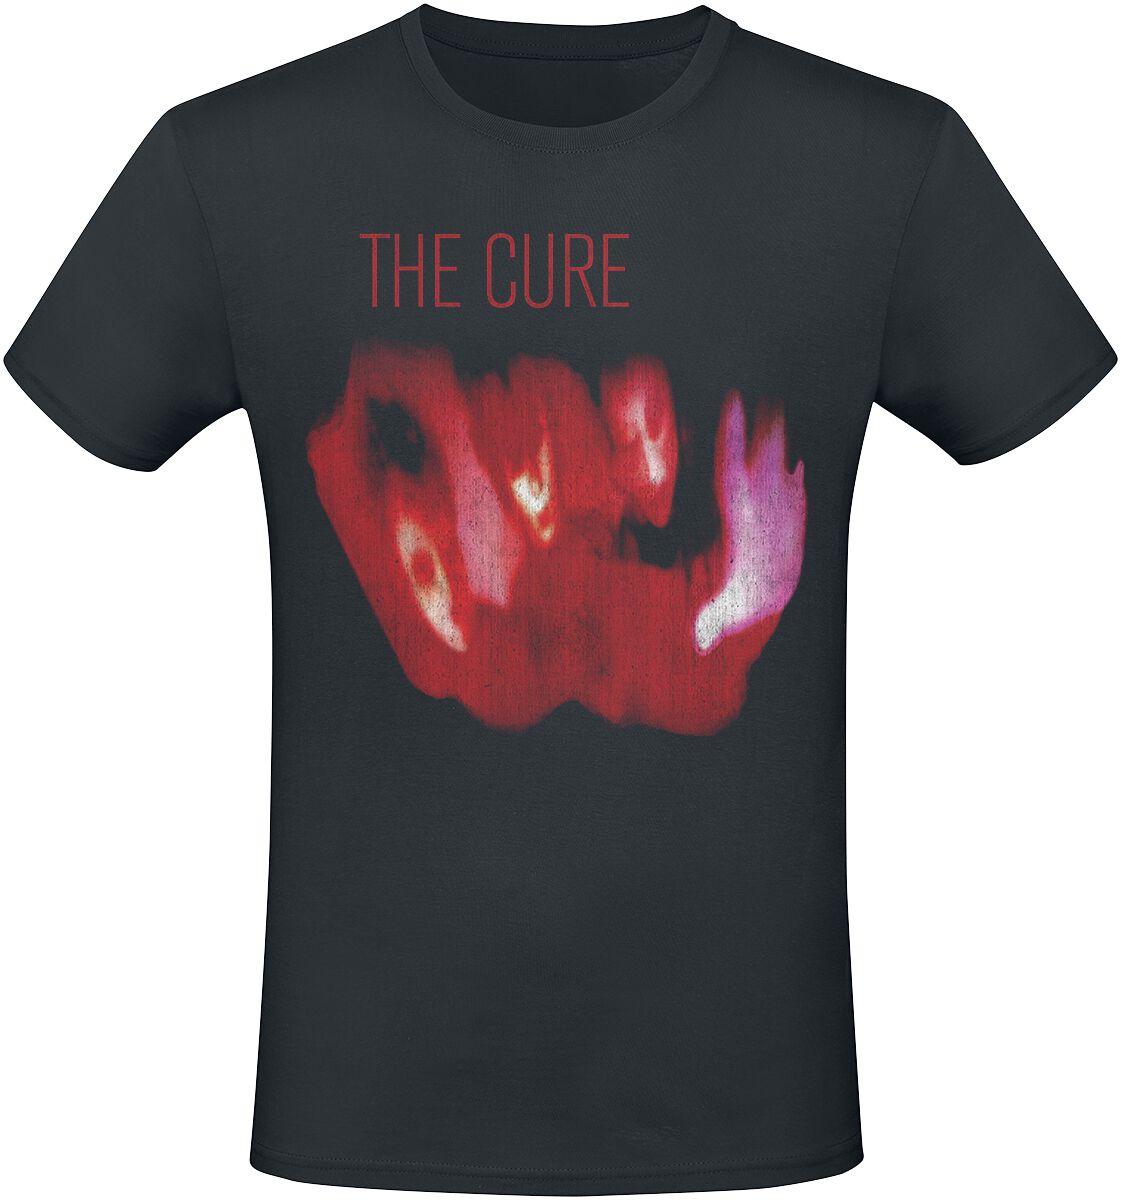 The Cure T-Shirt - Pornography 1982 - XL bis 3XL - für Männer - Größe 3XL - schwarz  - Lizenziertes Merchandise!